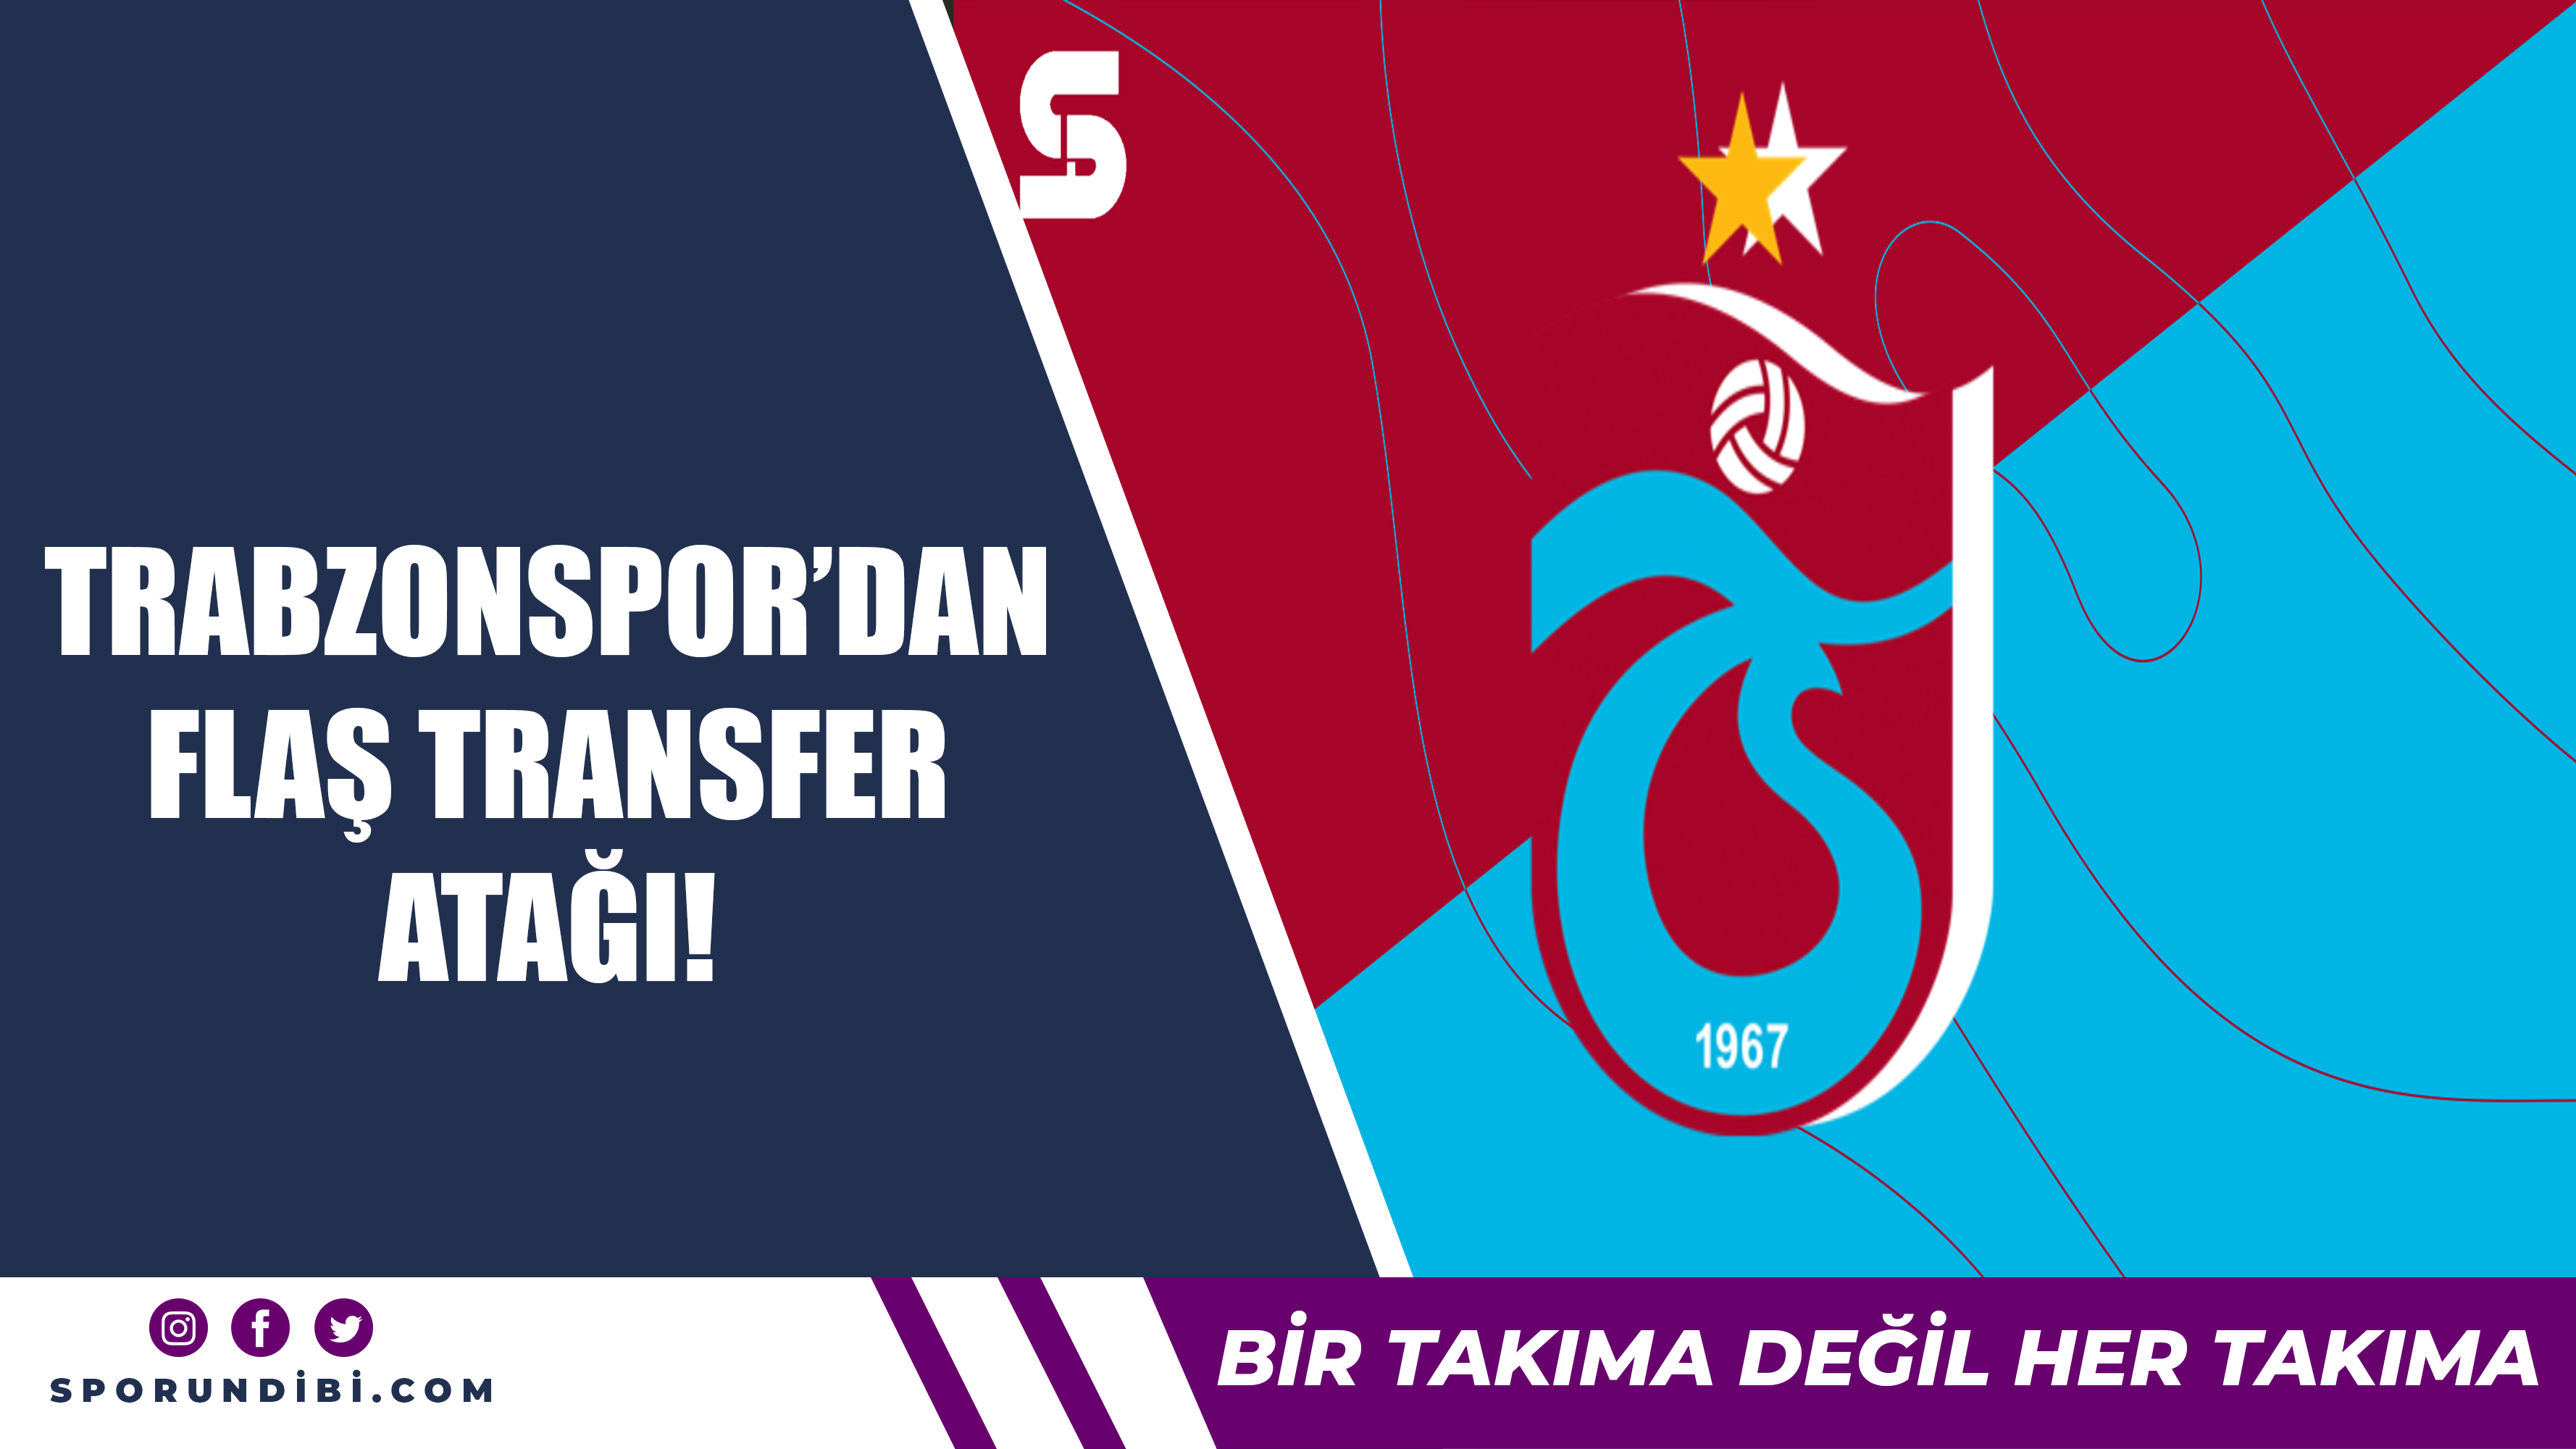 Trabzonspor'dan flaş transfer atağı!